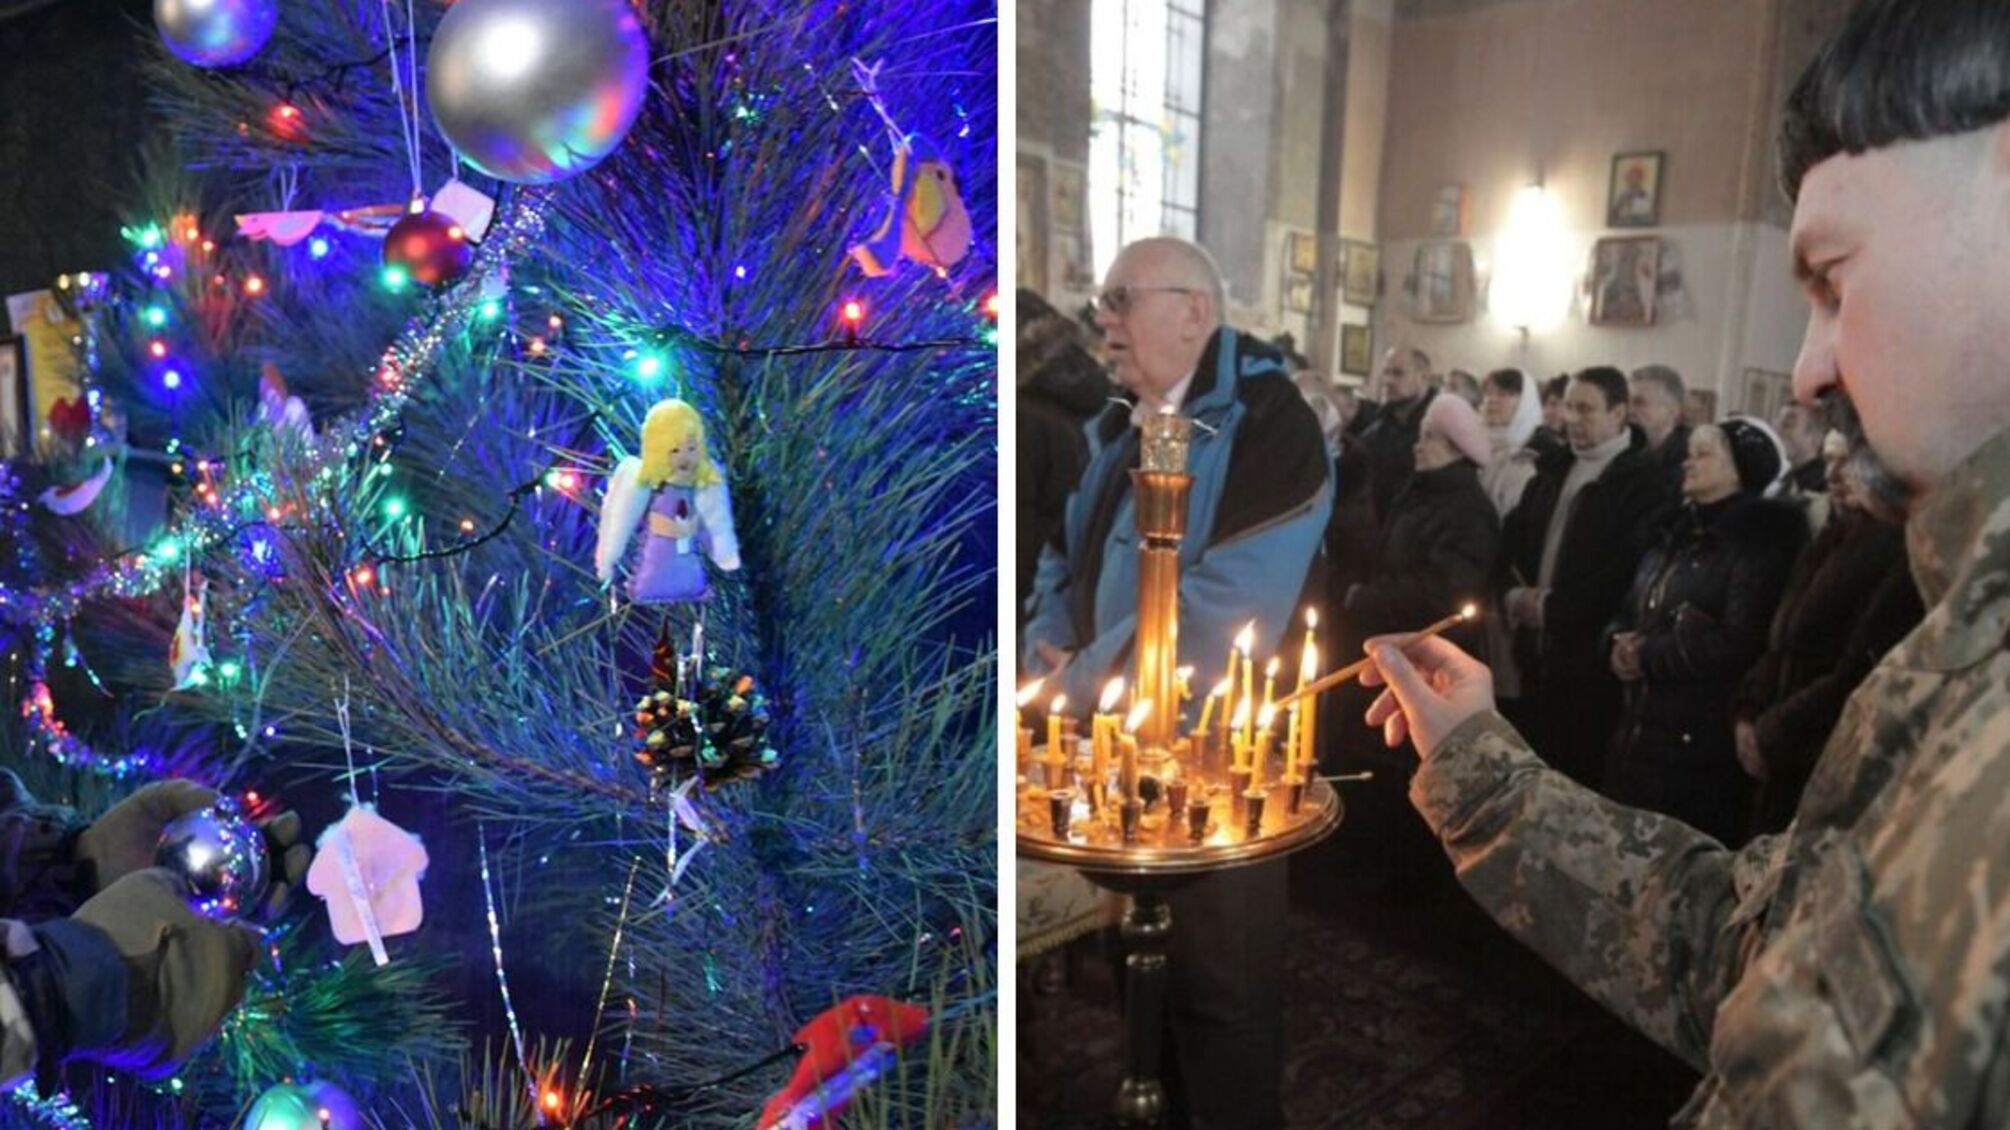 Церкви Украины – Православная и УГКЦ – перешли на новый календарь, изменив даты религиозных праздников на 13 дней раньше.